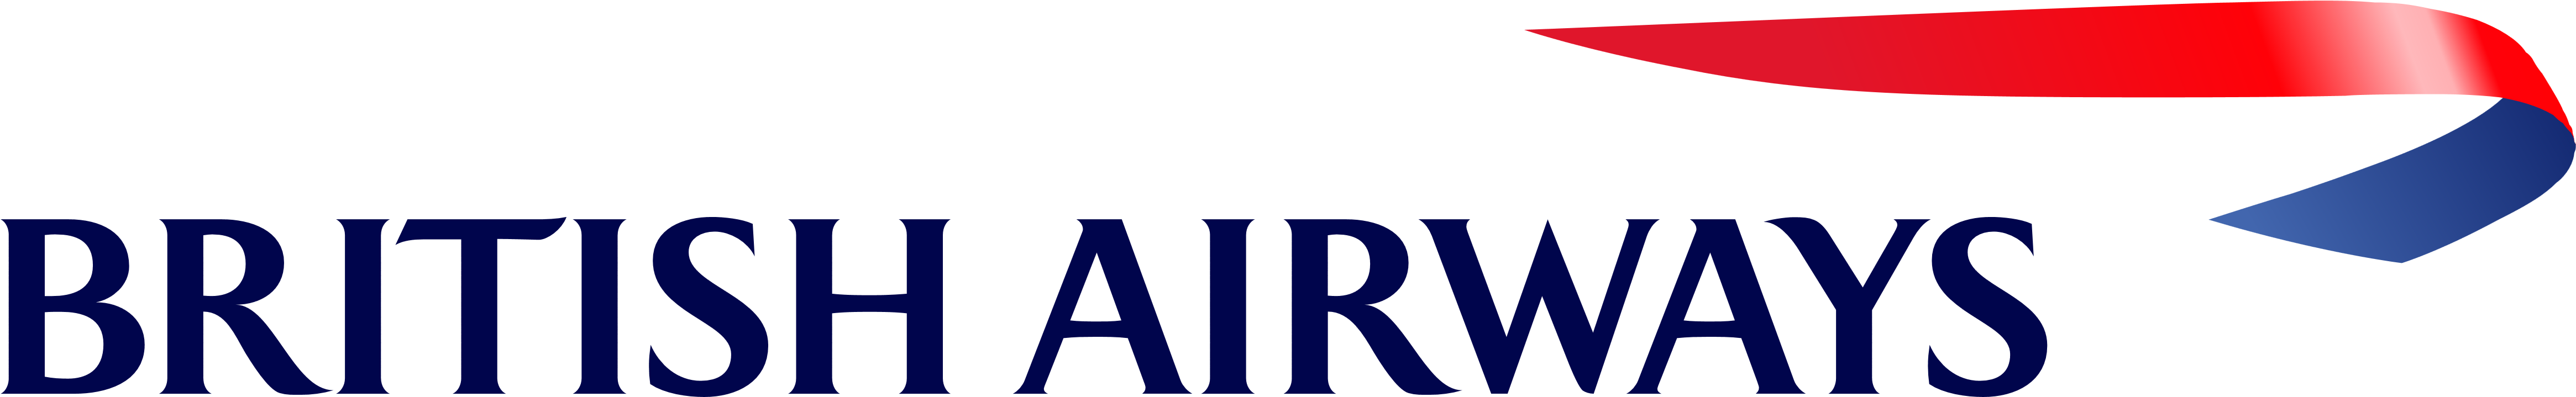 British Airways Logo - Heathrow Terminal 5 Station (5000x1038)